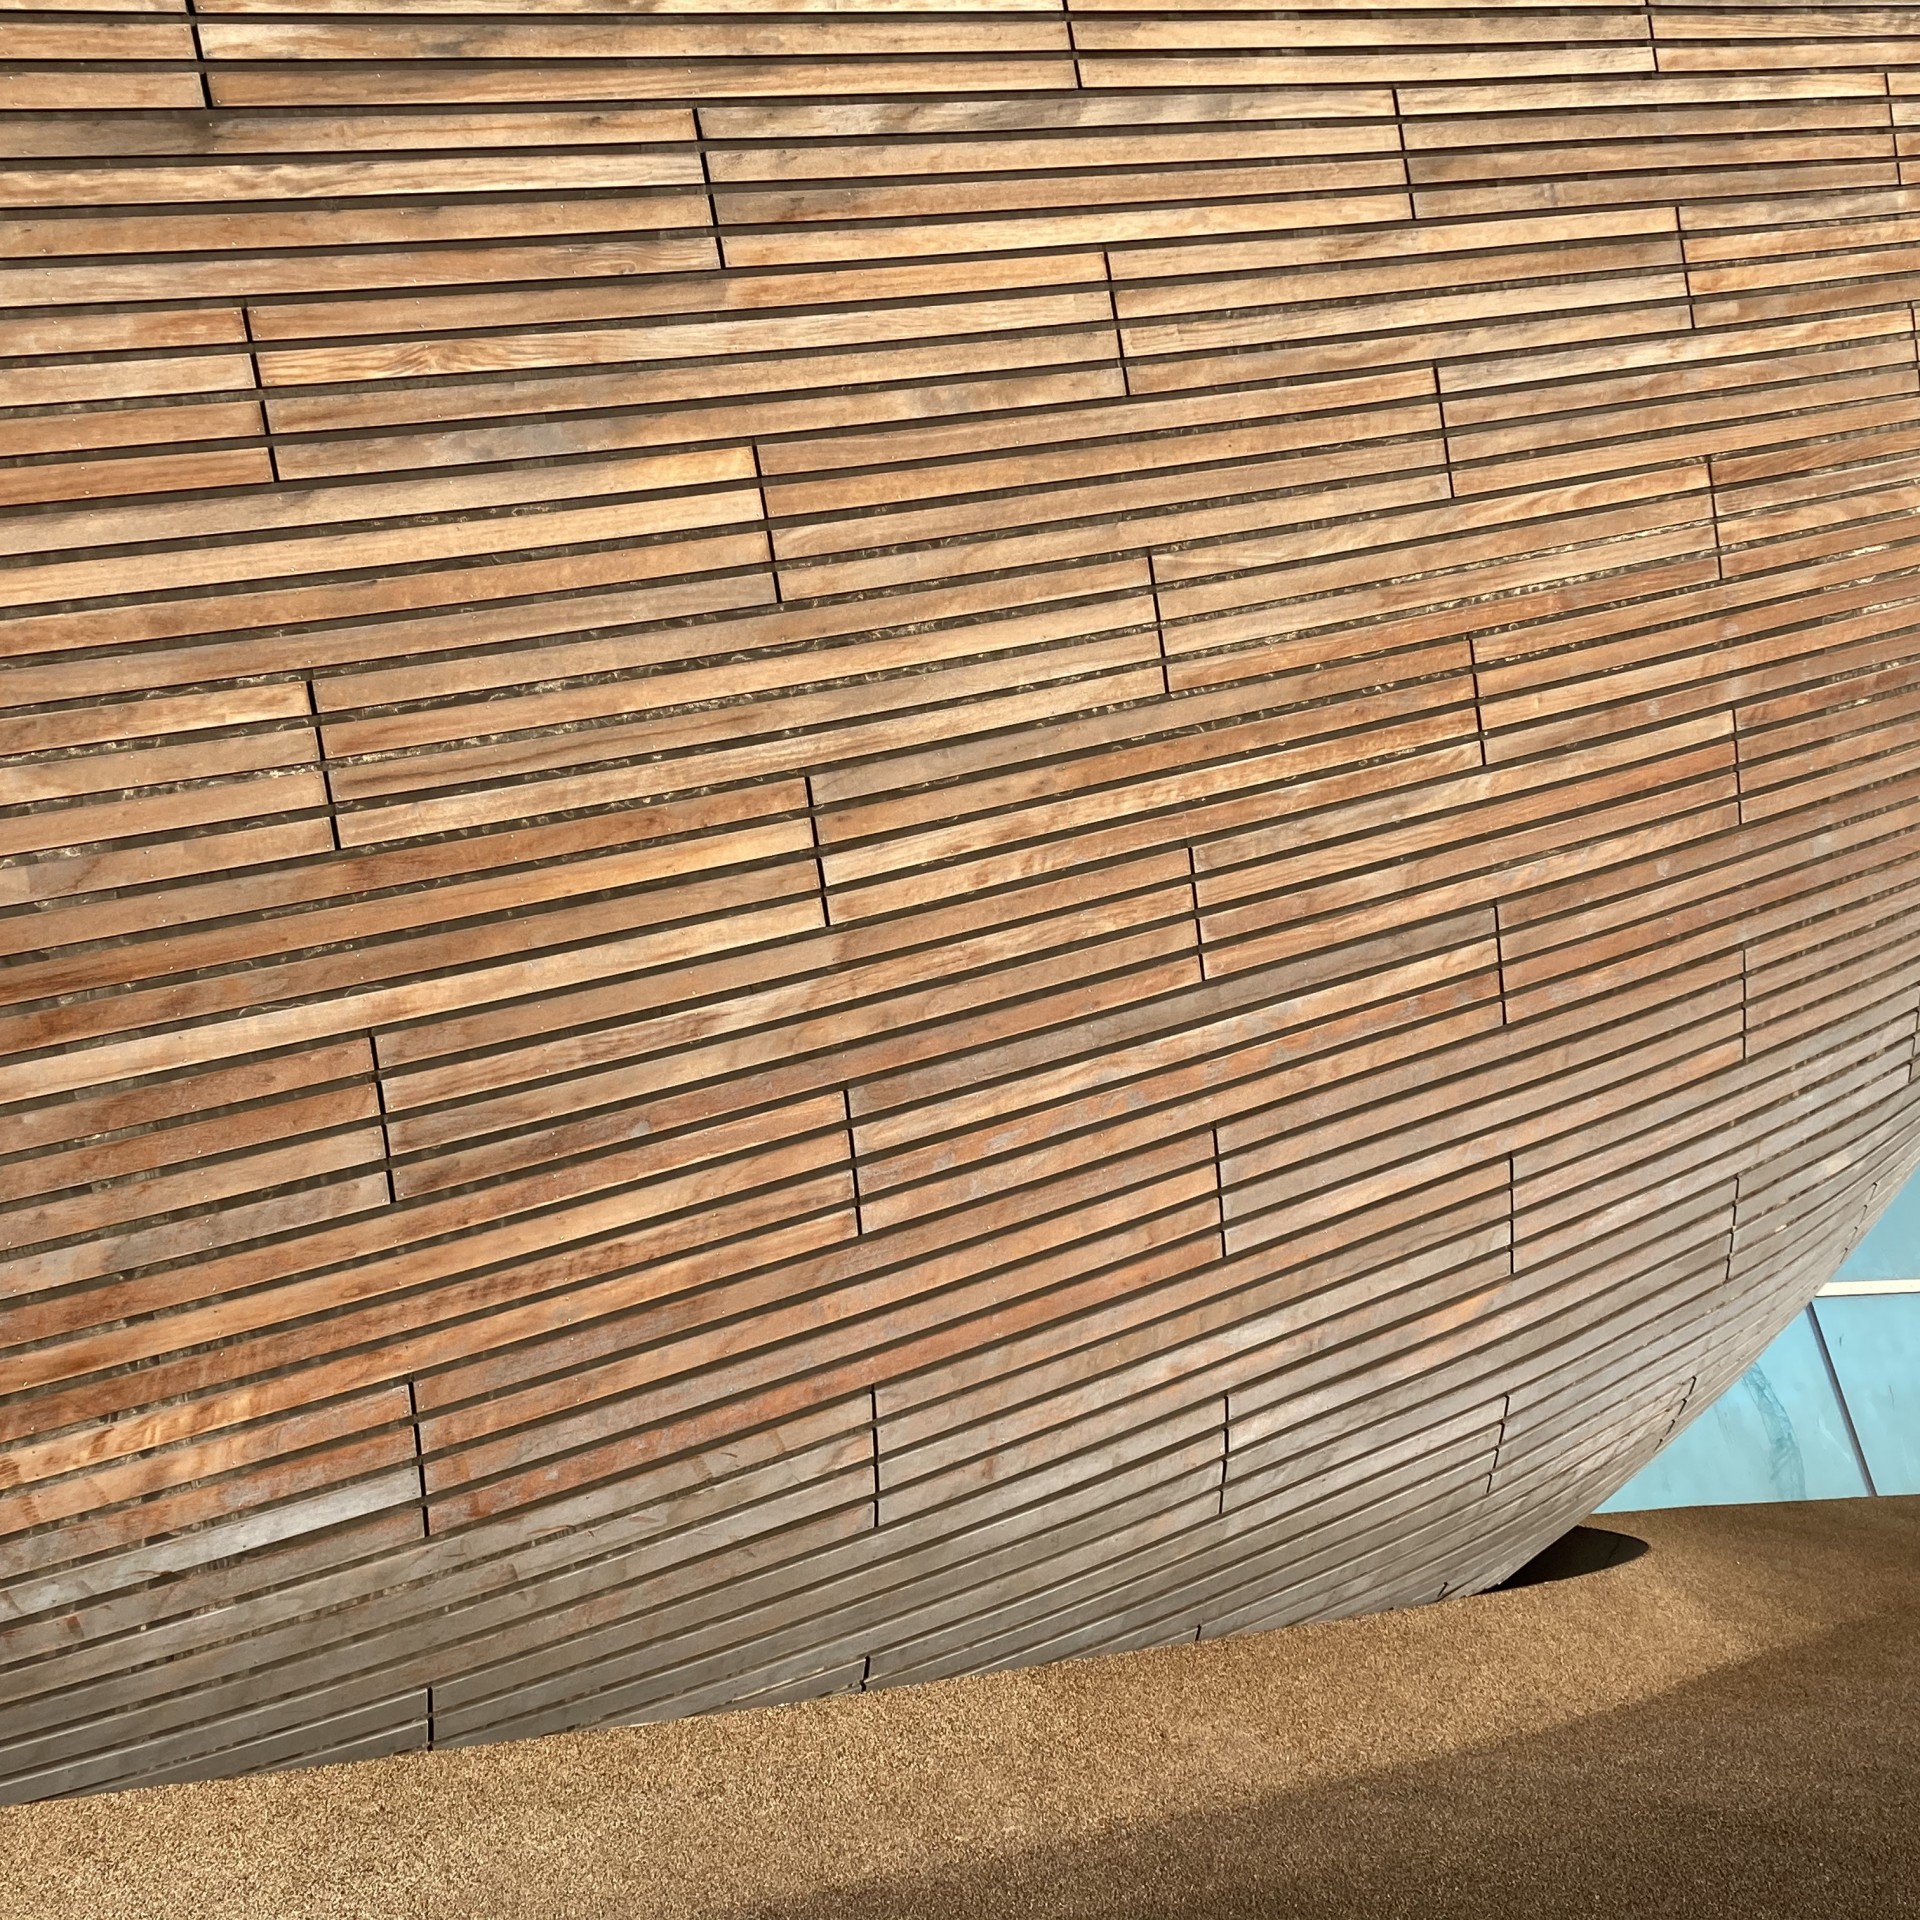 #18 Patrick Dubeck : Concrete Pavement